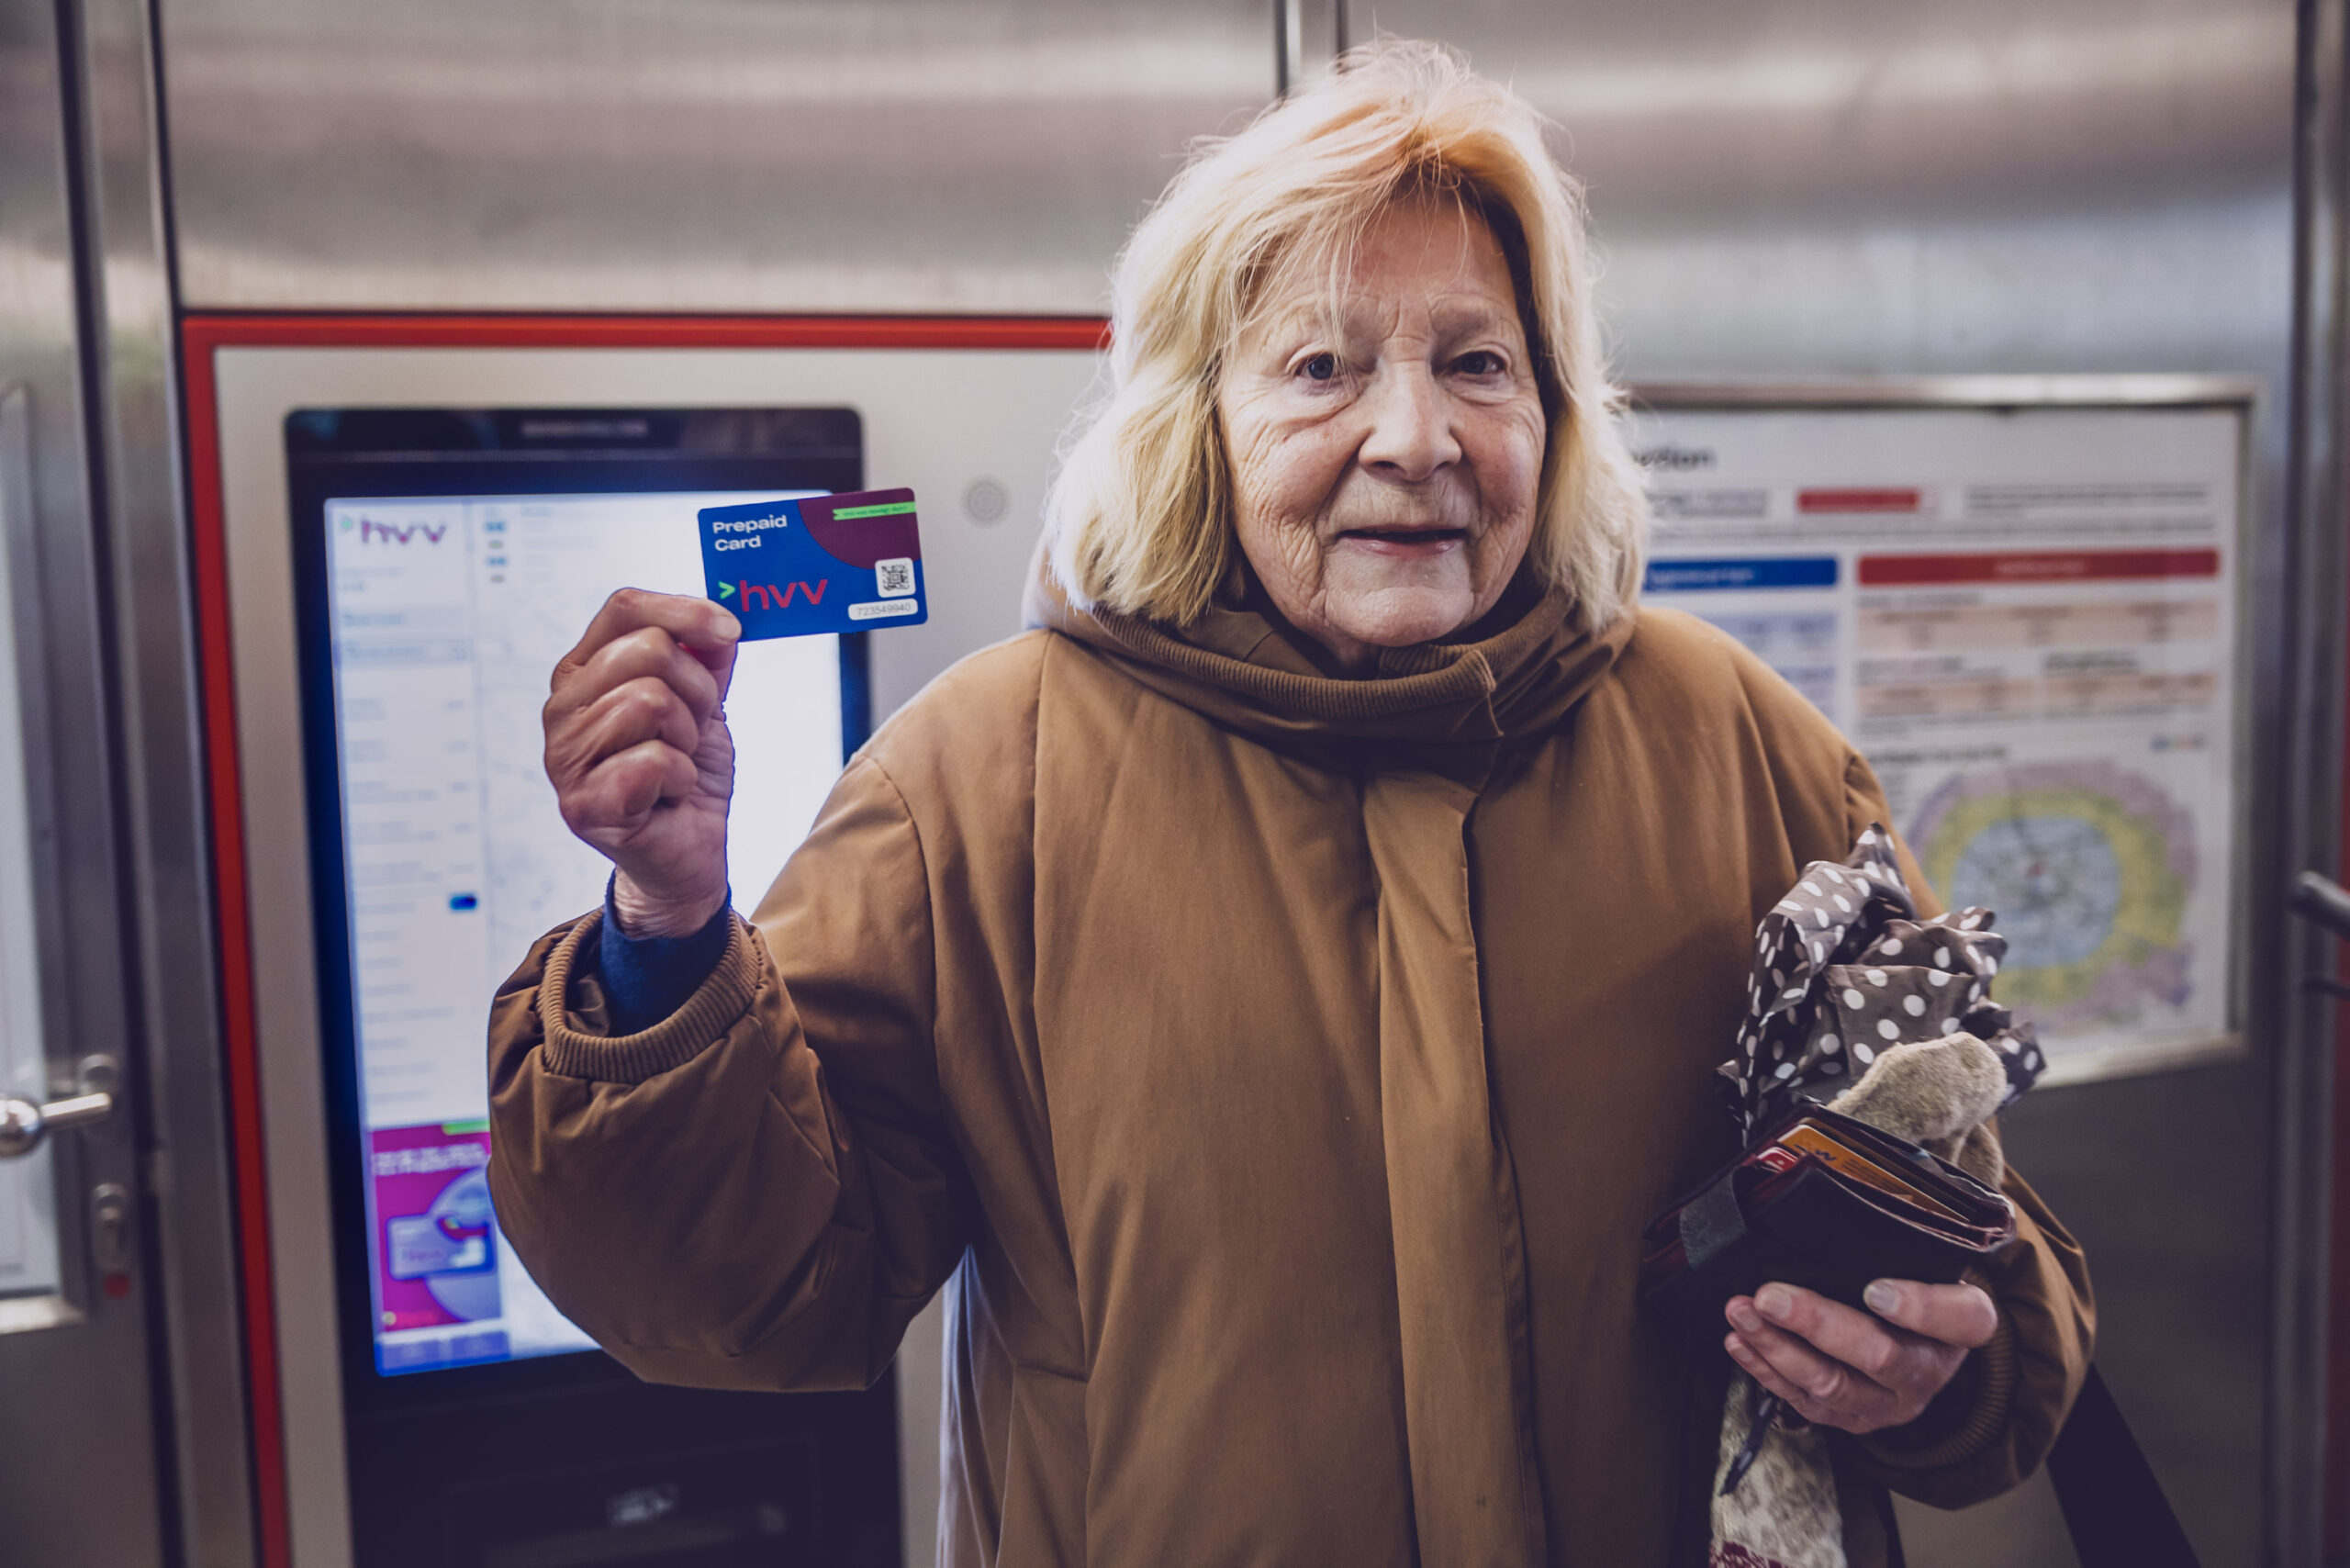 Anne K. vor einem Kartenautomaten des HVV. Sie hält eine Prepaid-Karte hoch.